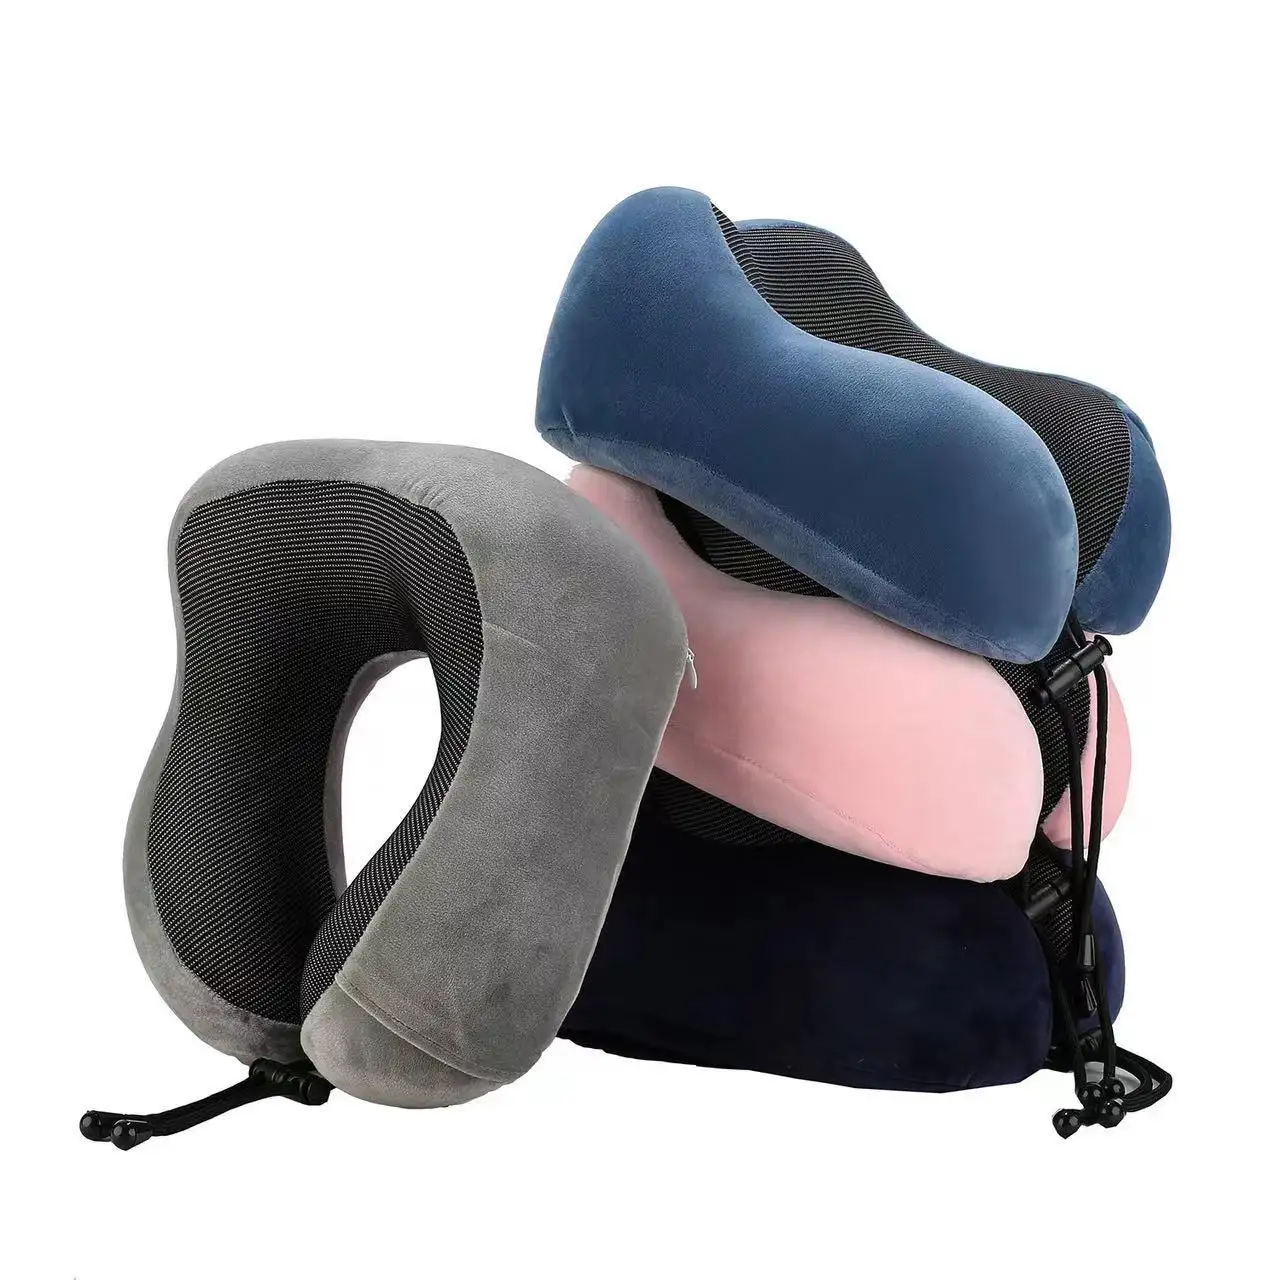 Memória espuma pescoço travesseiro confortável & respirável tampa suporte para a cabeça e pescoço avião viagem travesseiro